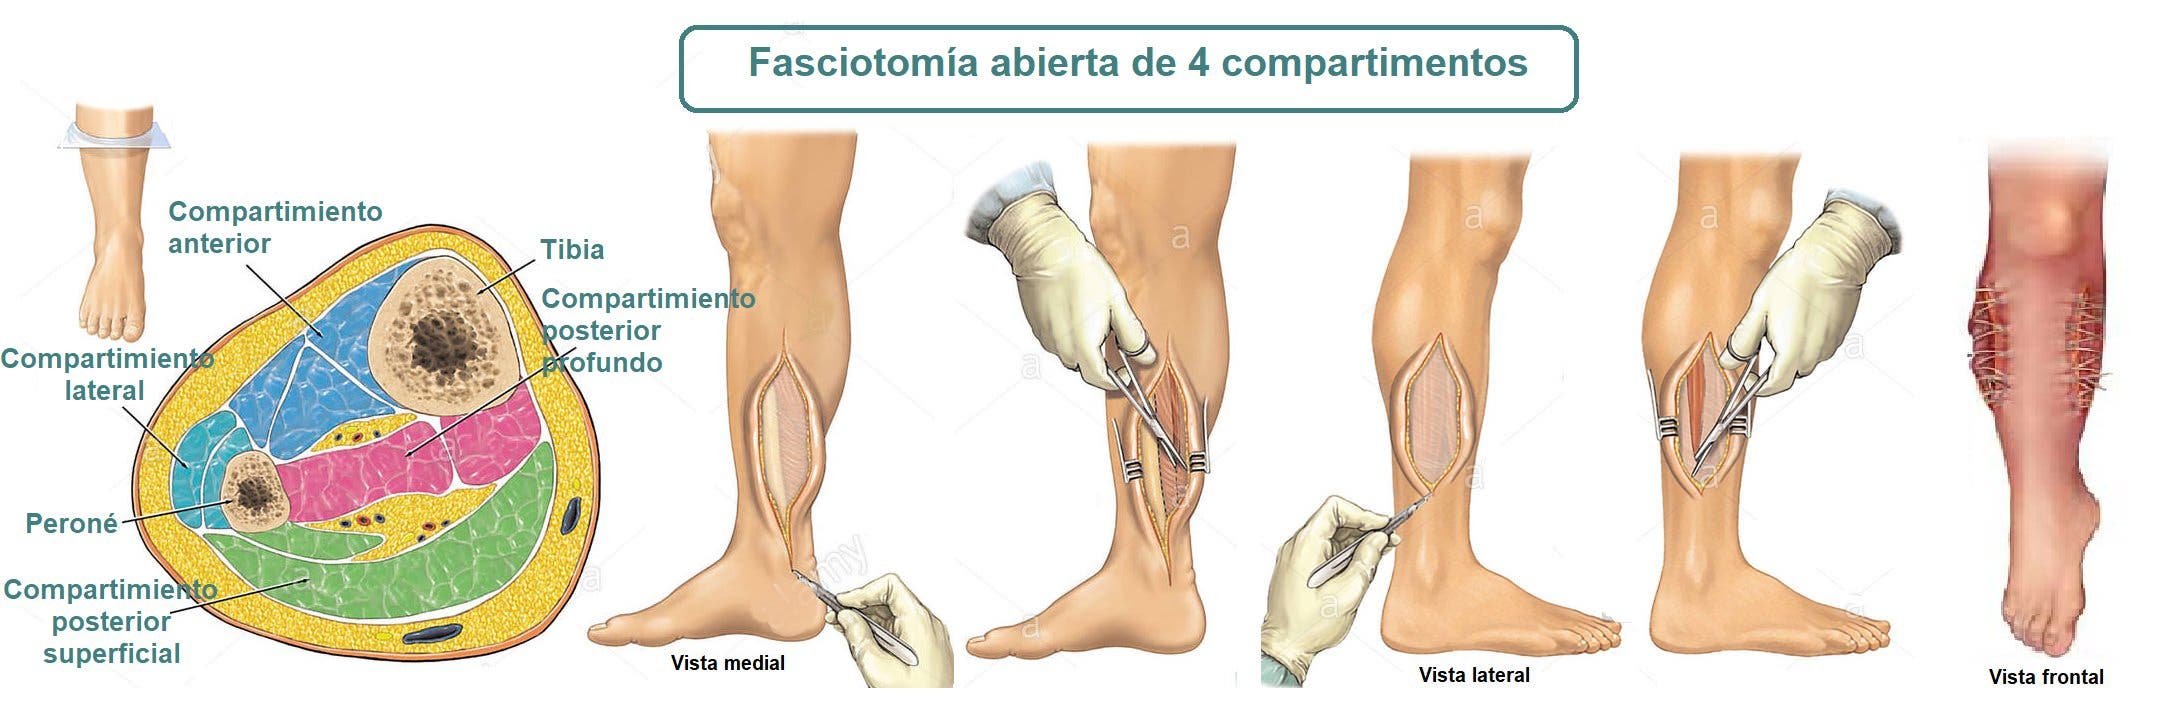 Fasciotomia